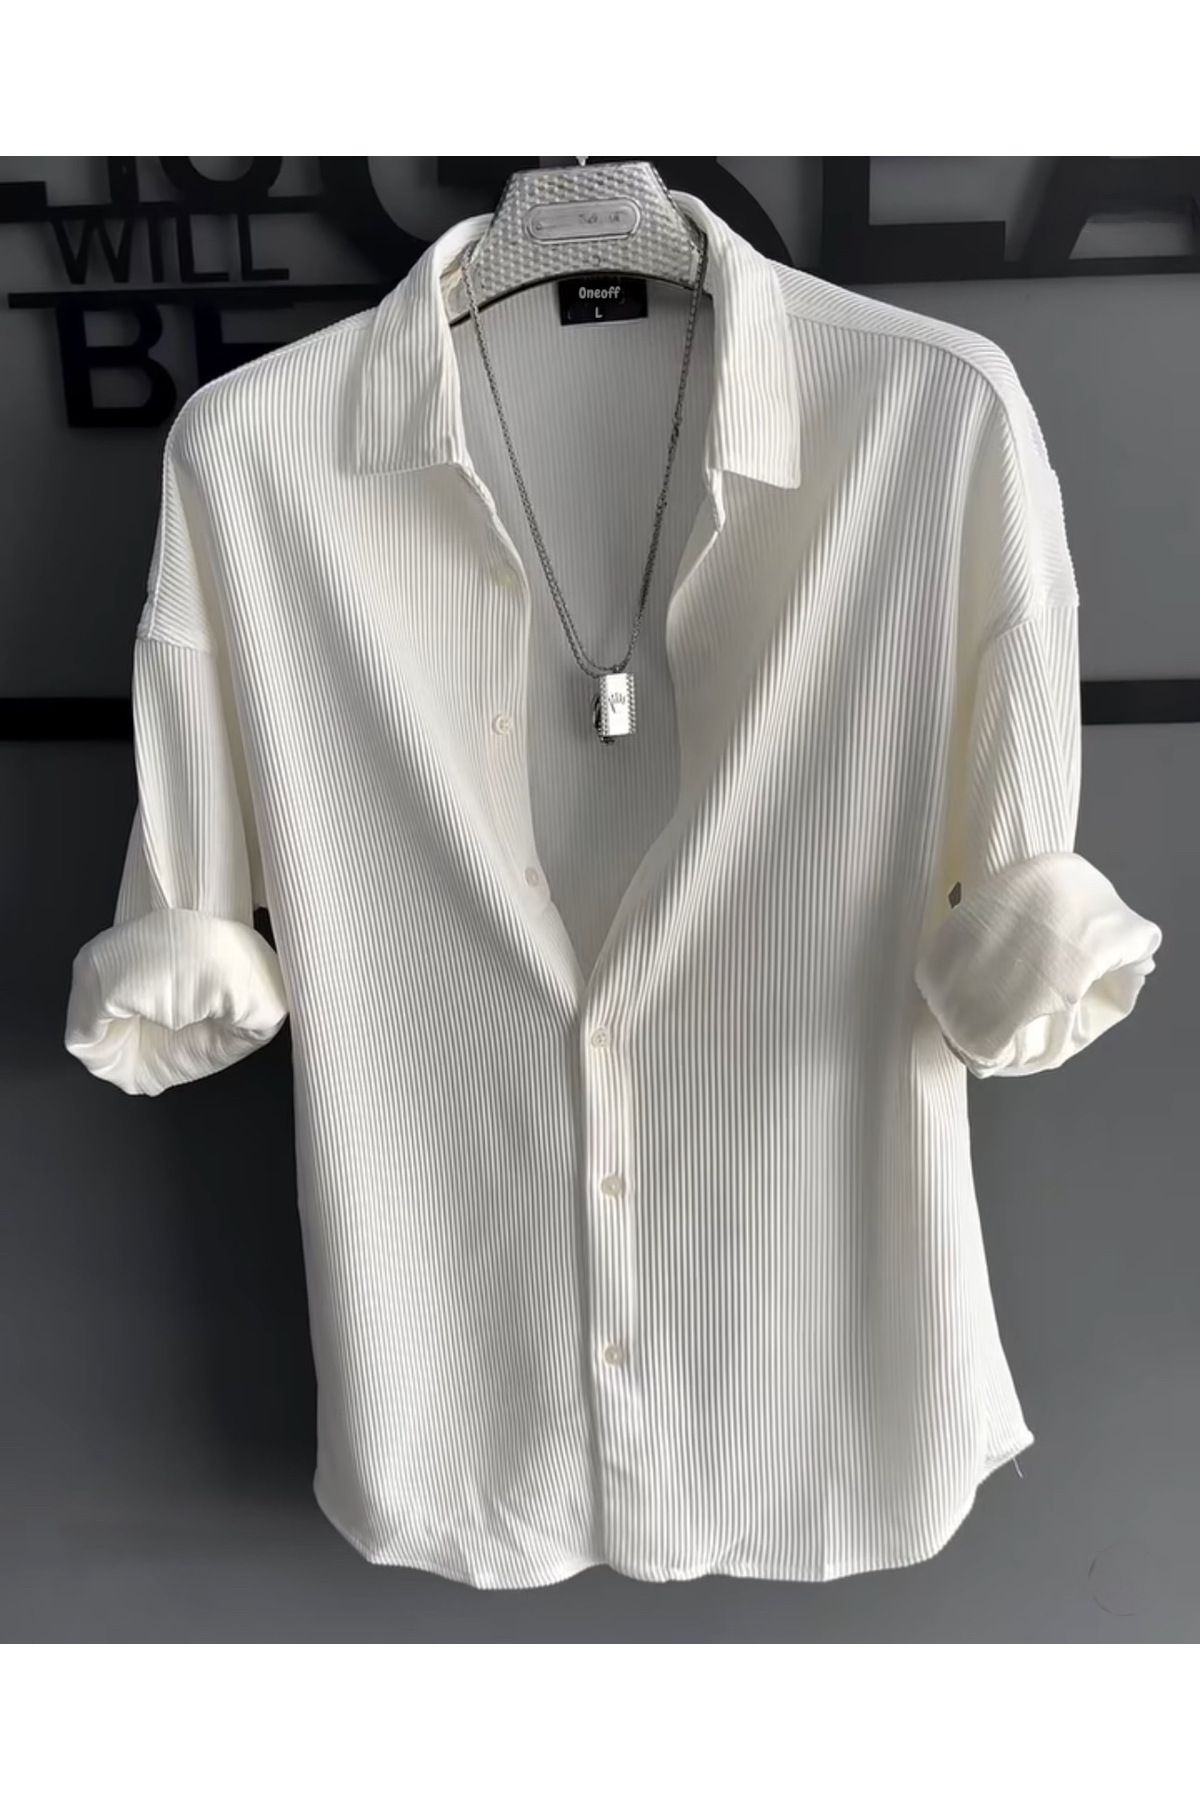 oneoff Erkek Yazlık Beyaz Fitilli Ottoman Dokulu Oversize Gömlek